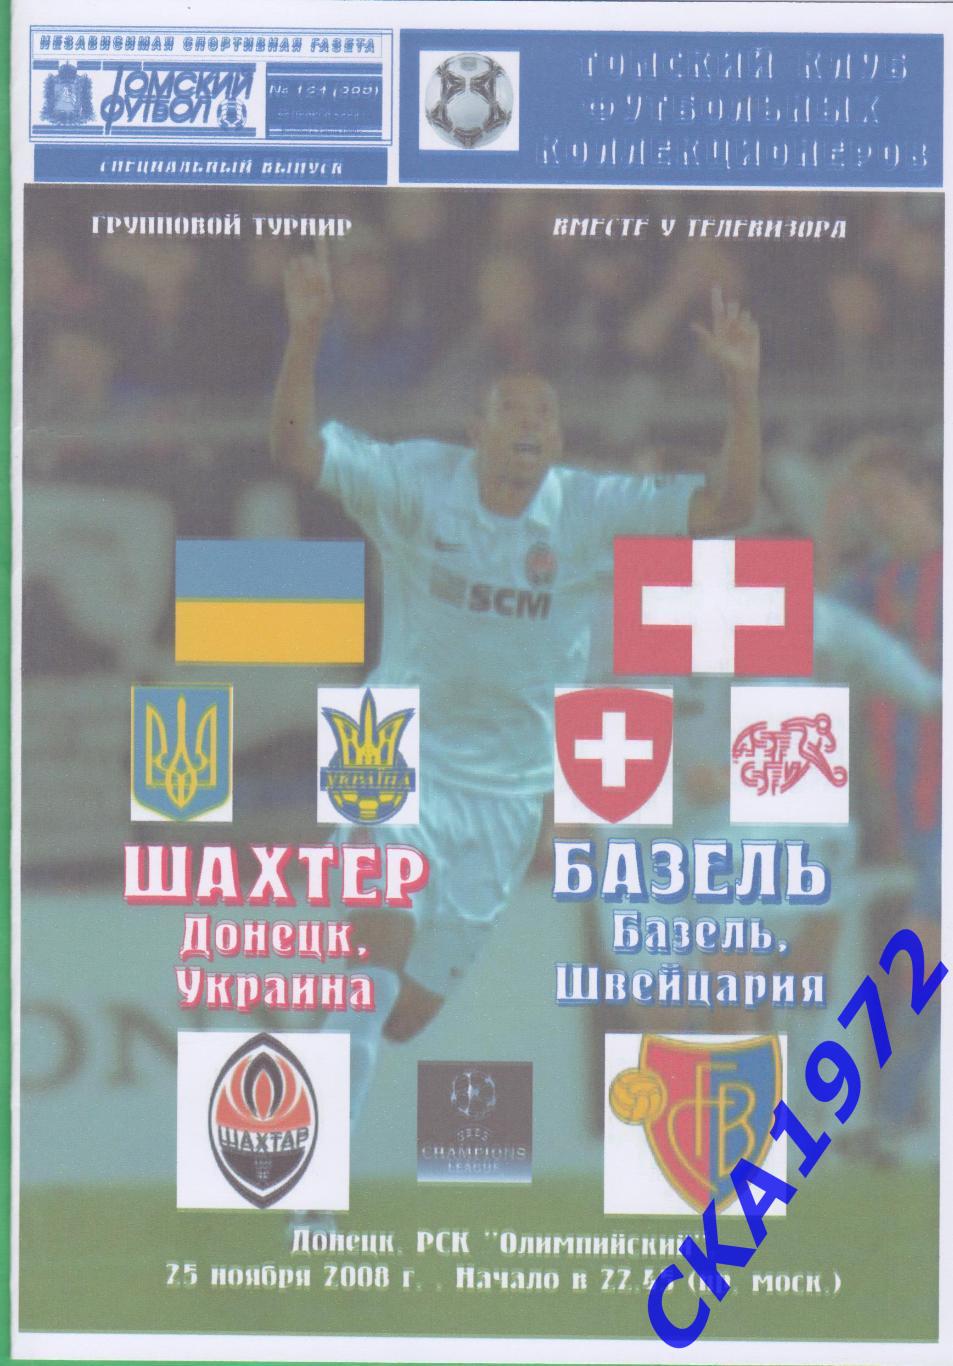 программа Шахтер Донецк Украина - Базель Швейцария 2008 Лига чемпионов